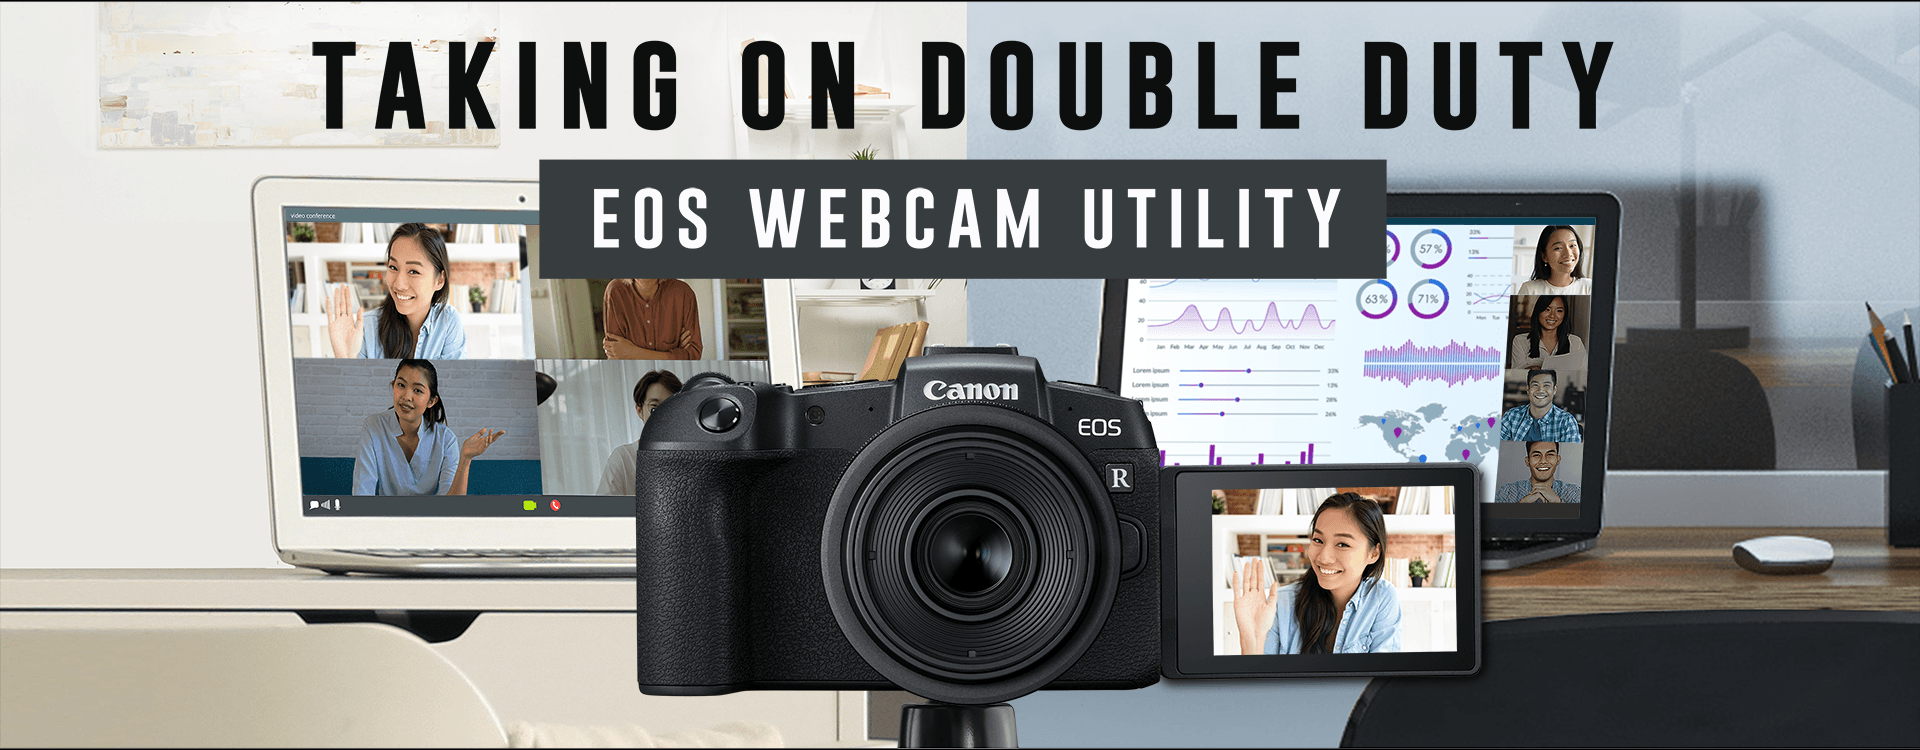 EOS Webcam Utility